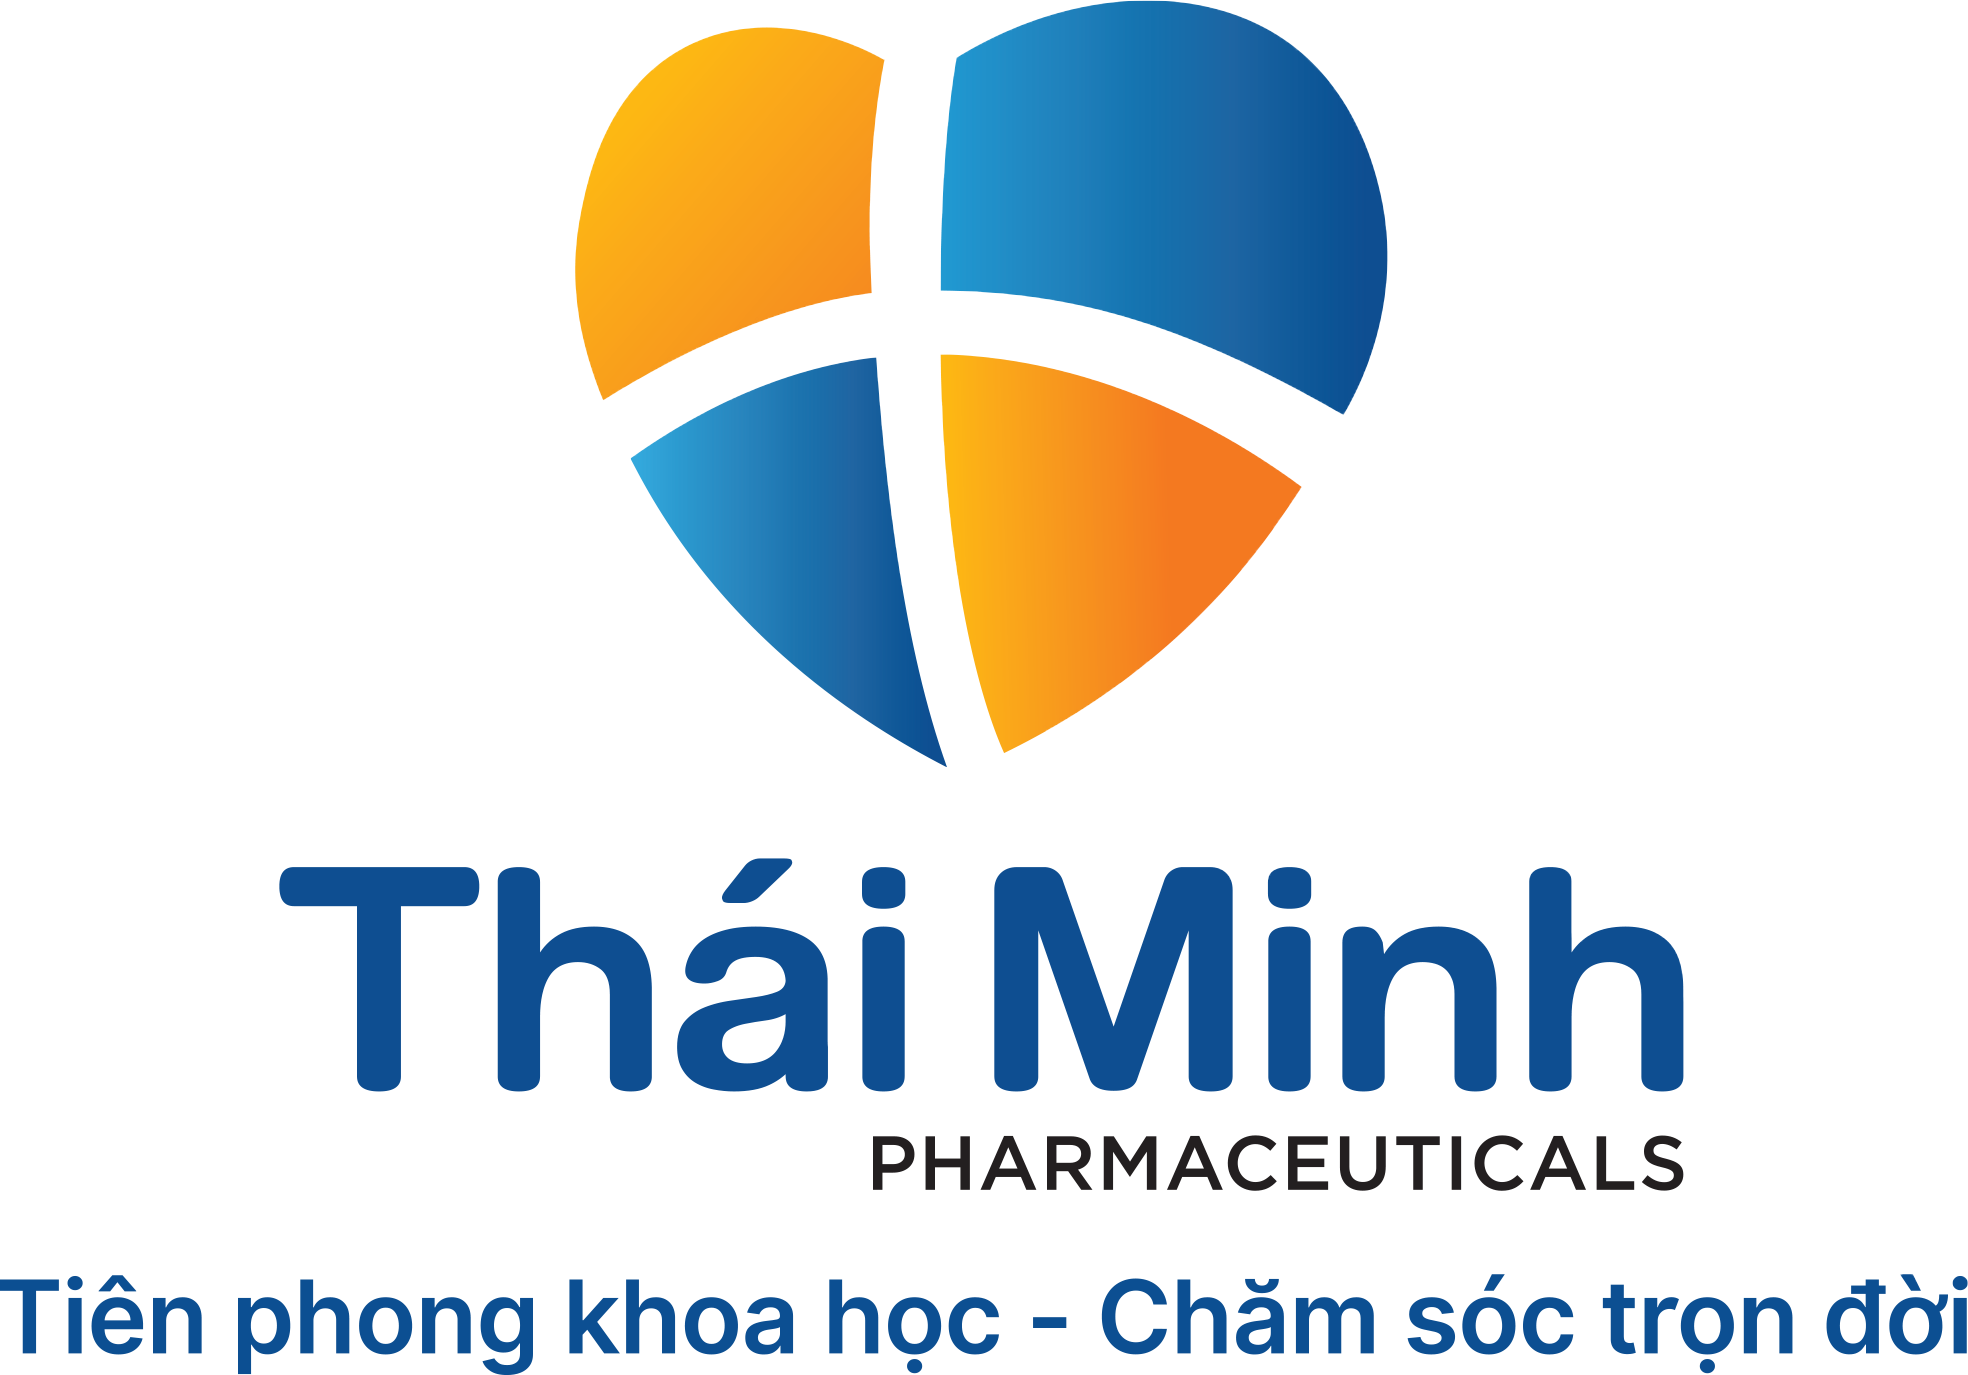 Dược phẩm Thái Minh ra mắt bộ nhận diện thương hiệu mới 1